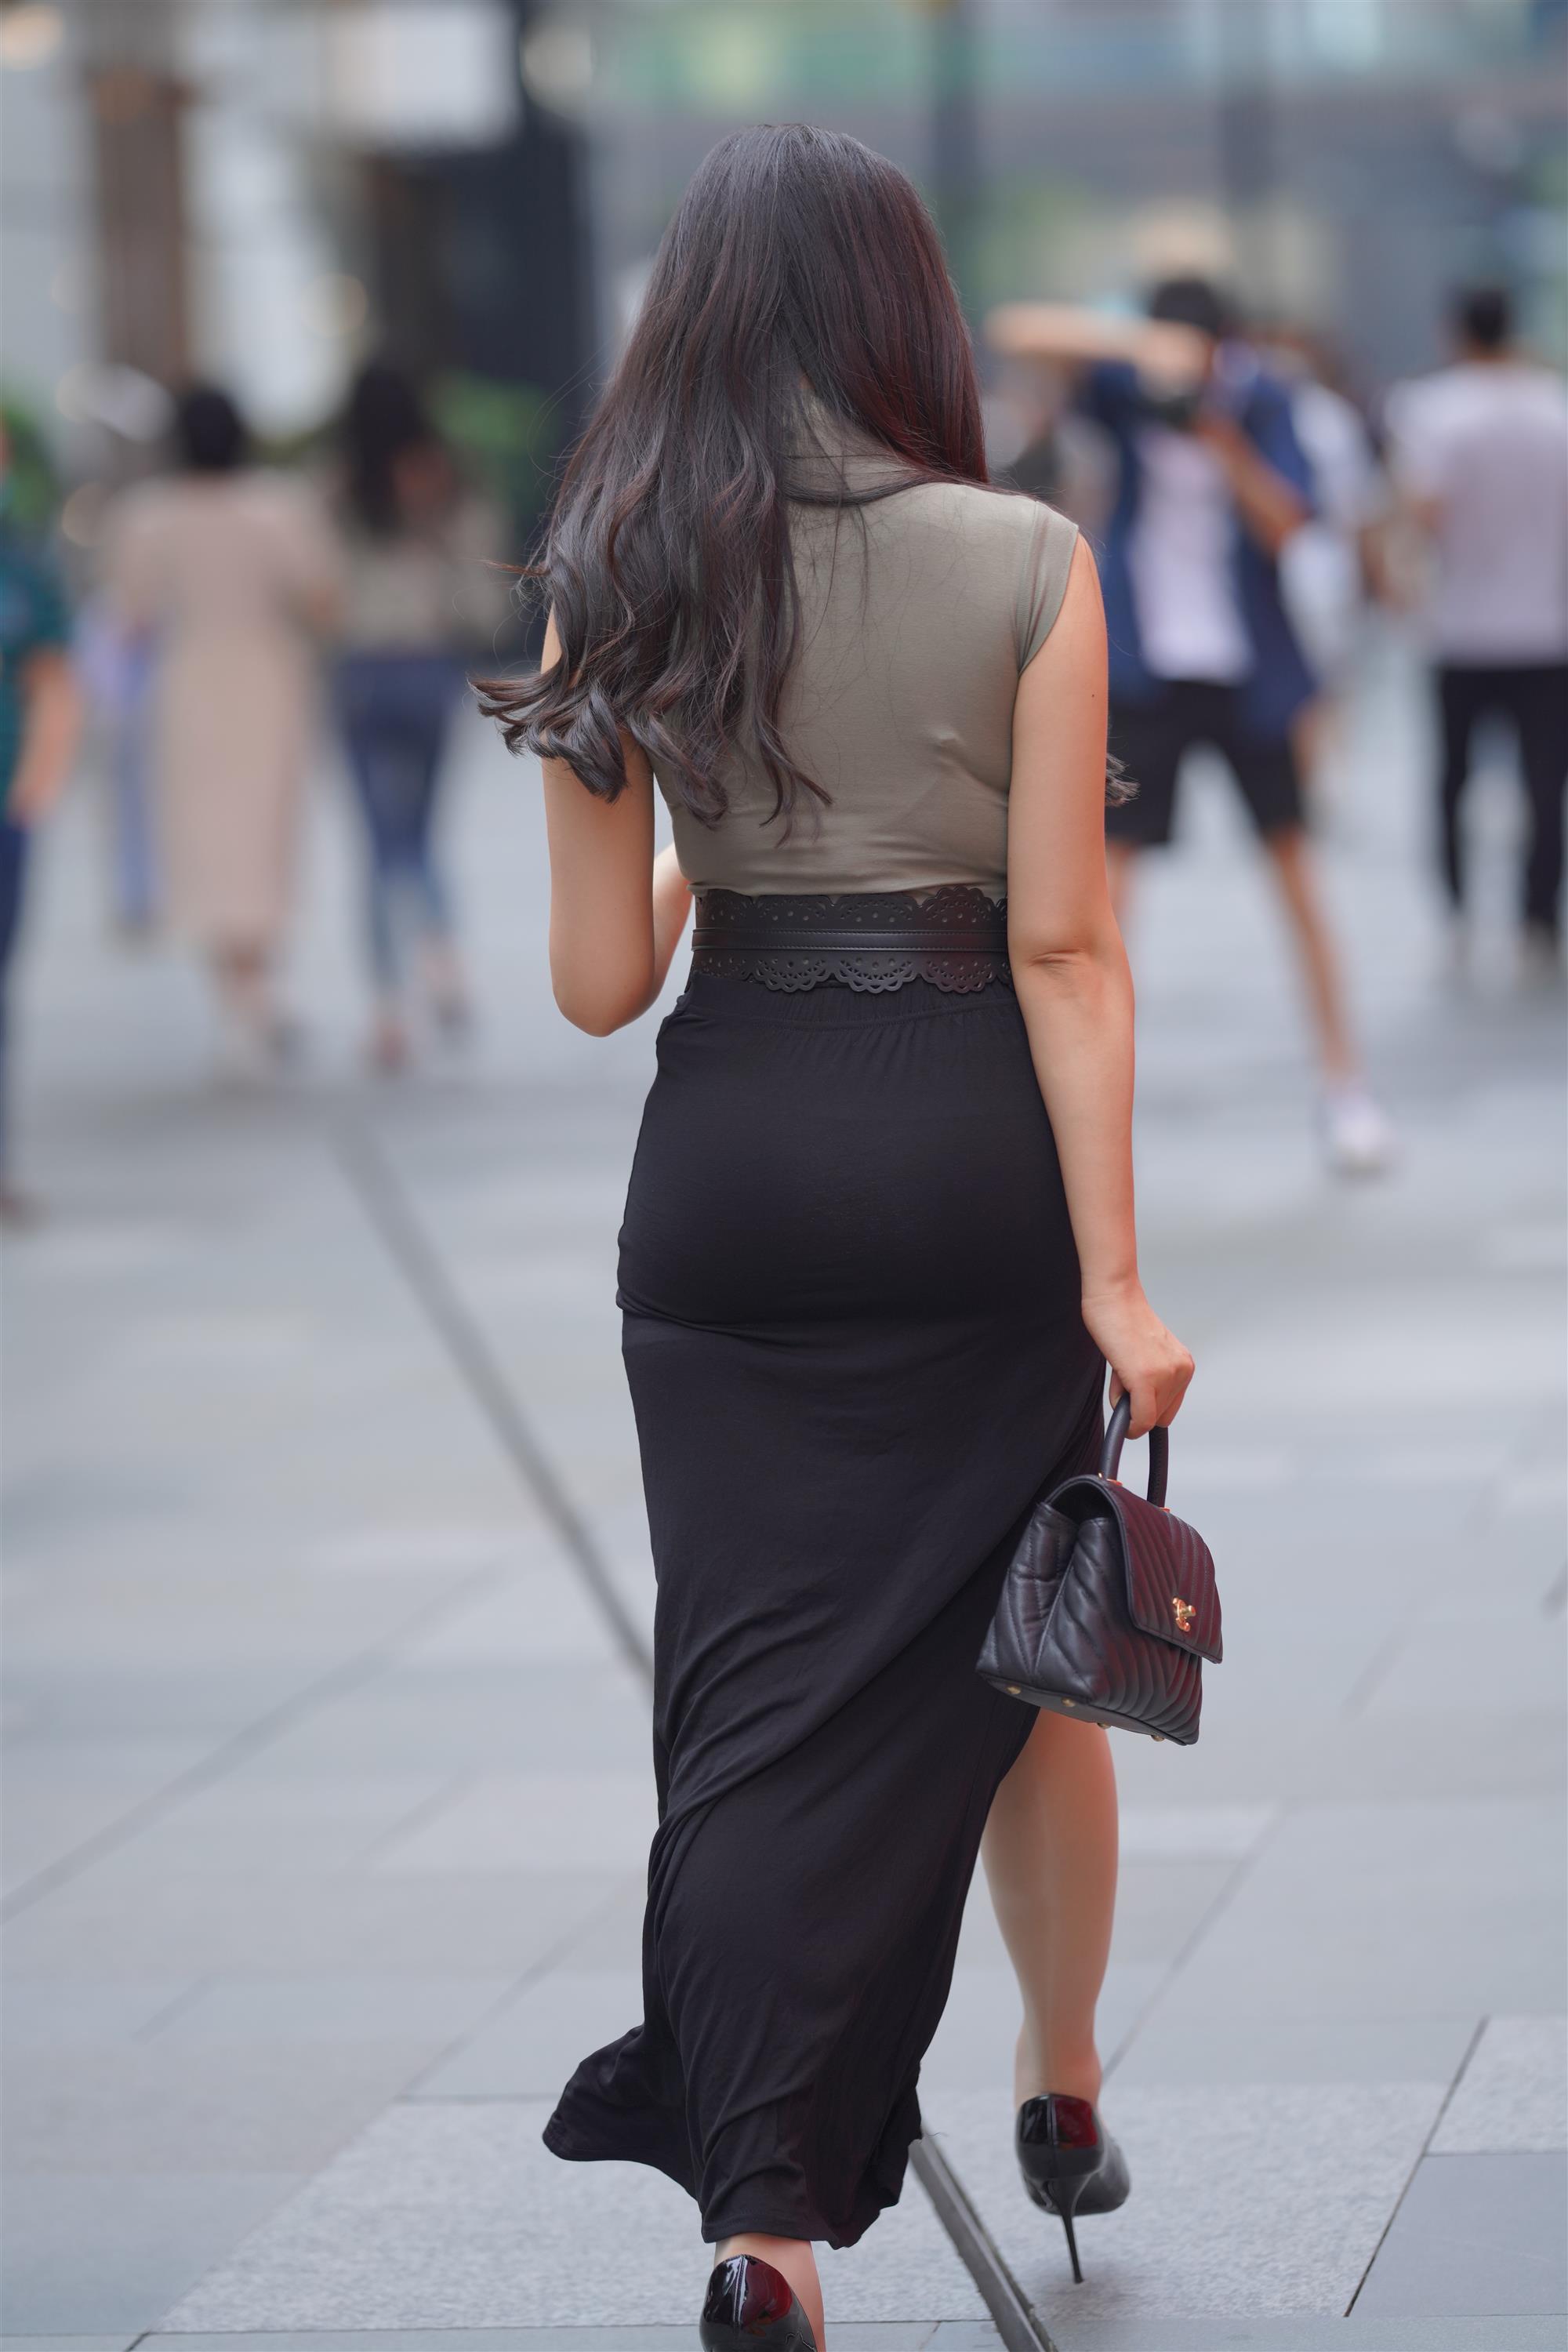 Street 欣儿 Long black skirt - 62.jpg